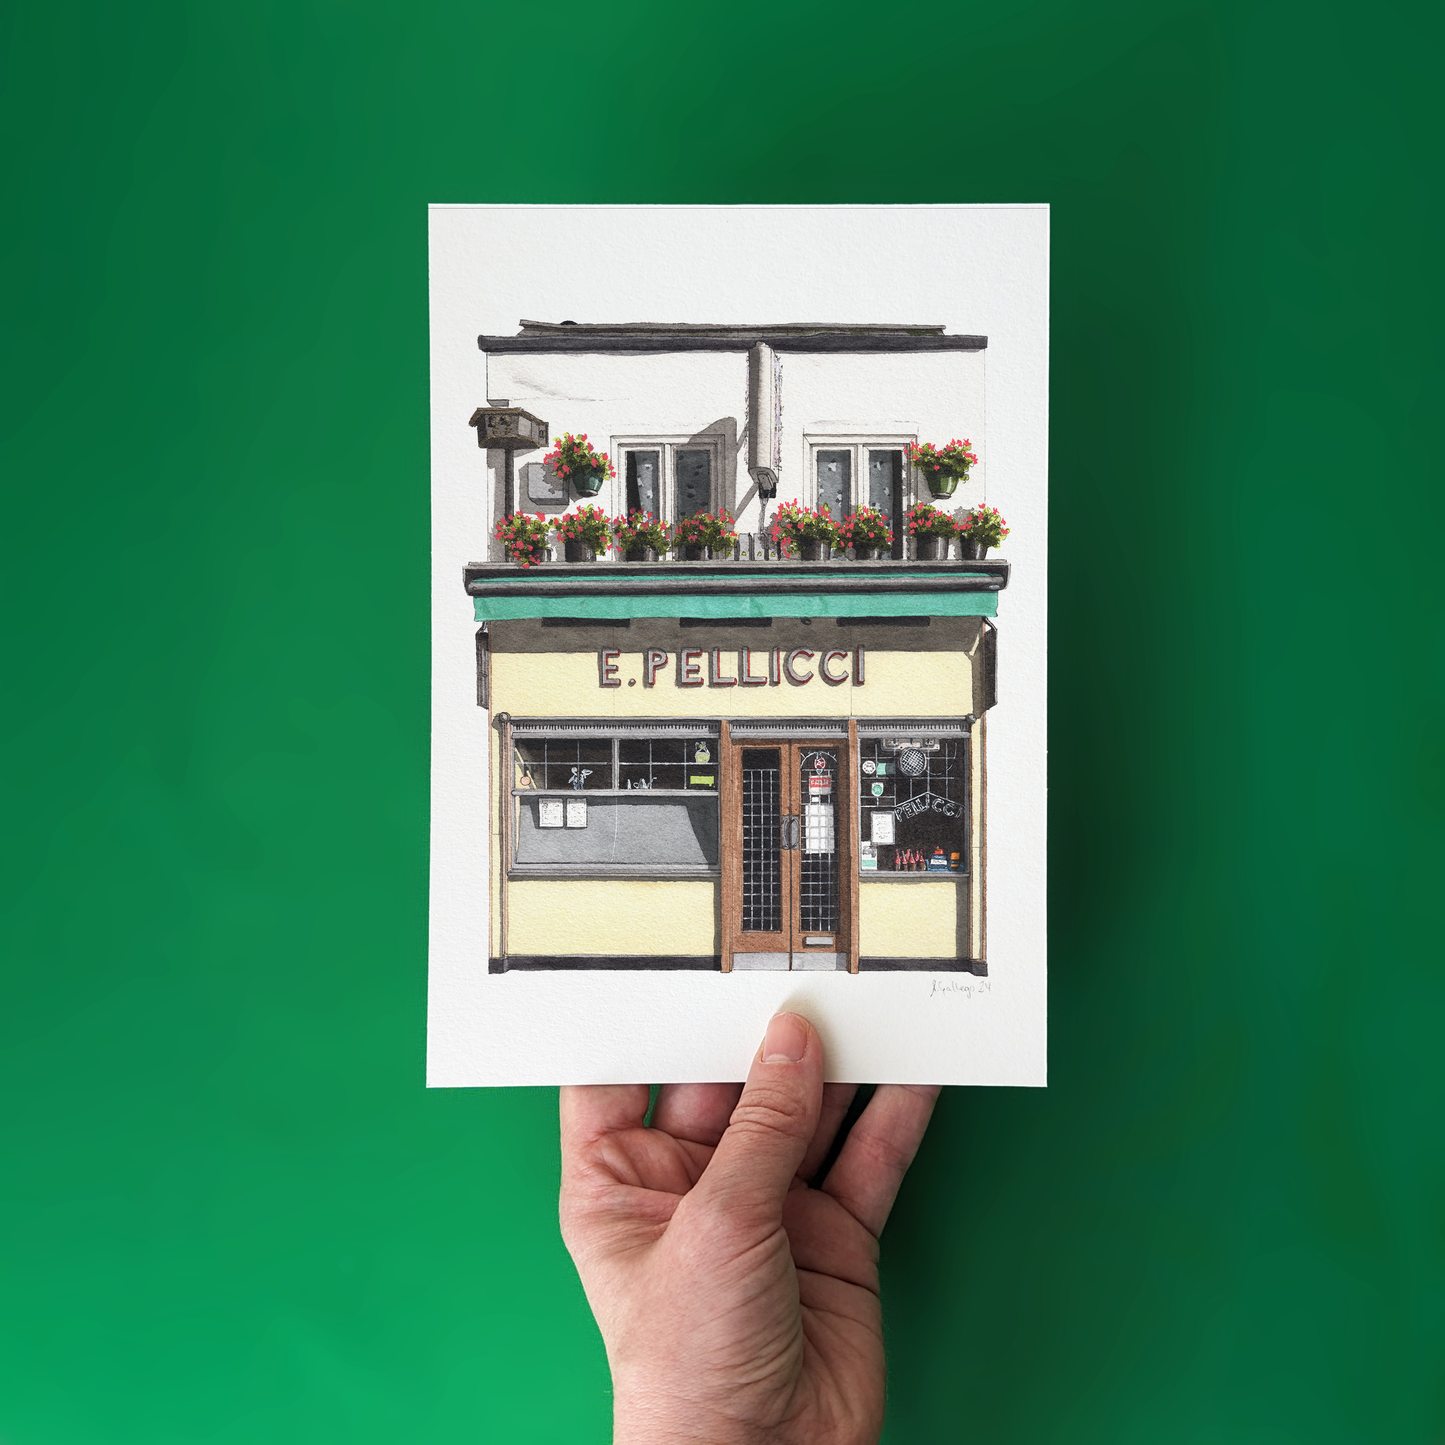 Bethnal Green - E Pellicci Cafe - Giclée Print (unframed